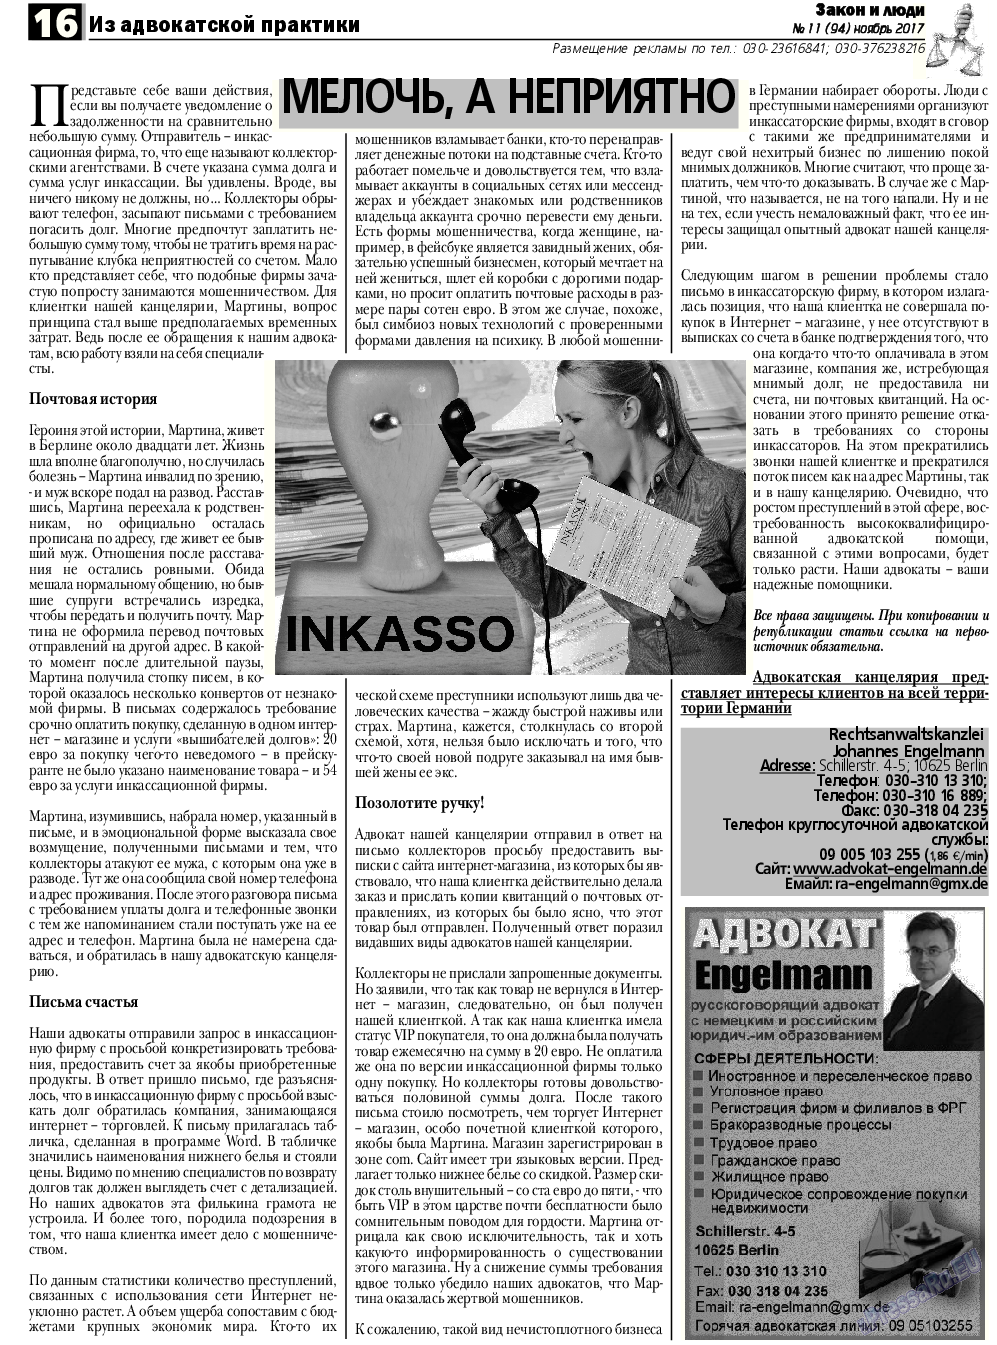 Закон и люди, газета. 2017 №11 стр.16